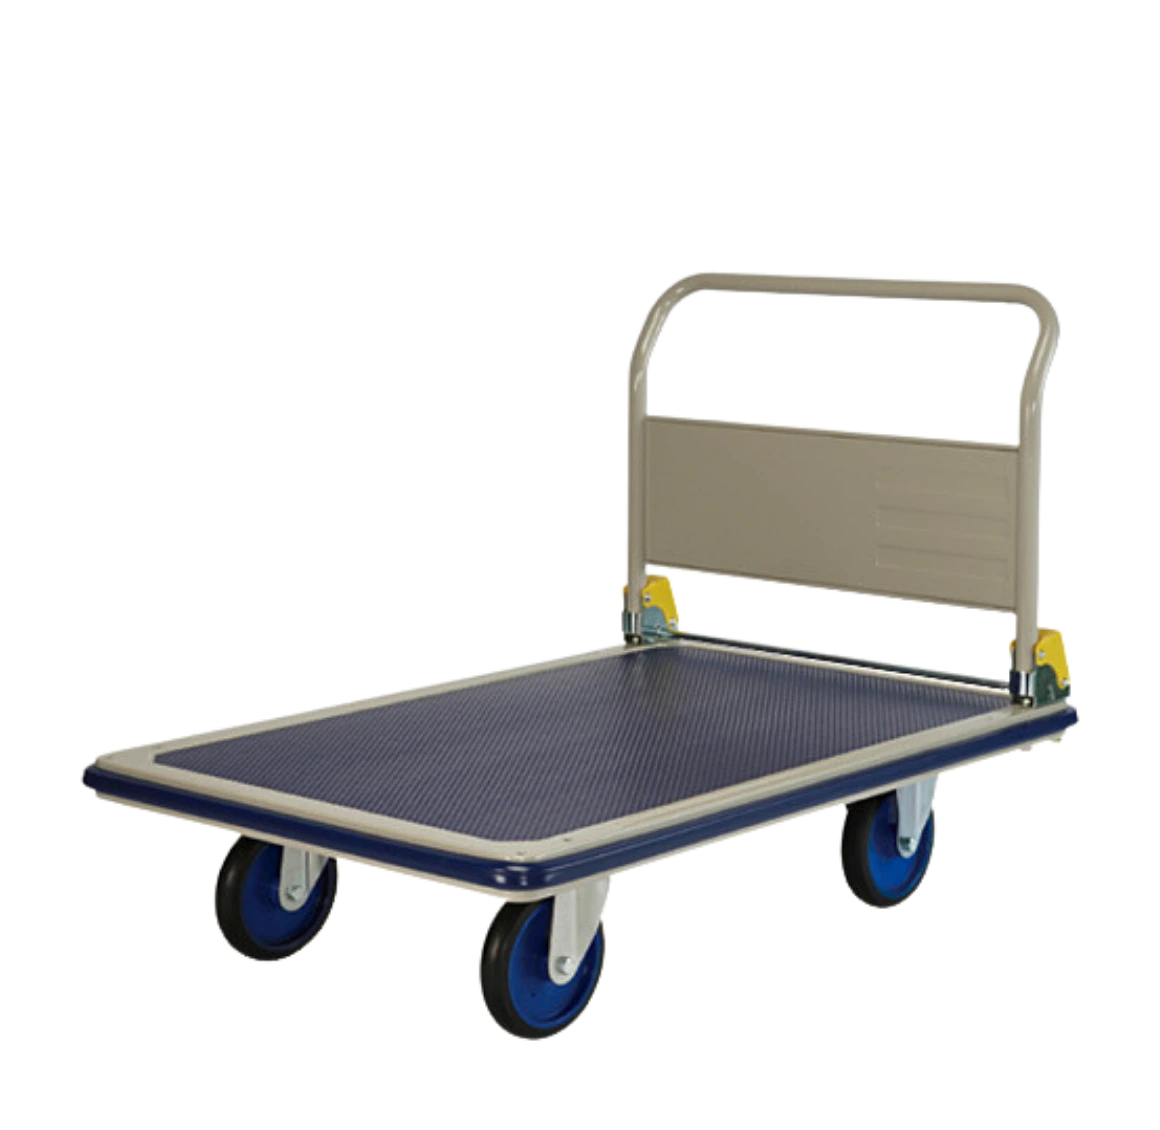 Prestar Platform Trolley, NG-401-8 - 500Kg Weight Capacity